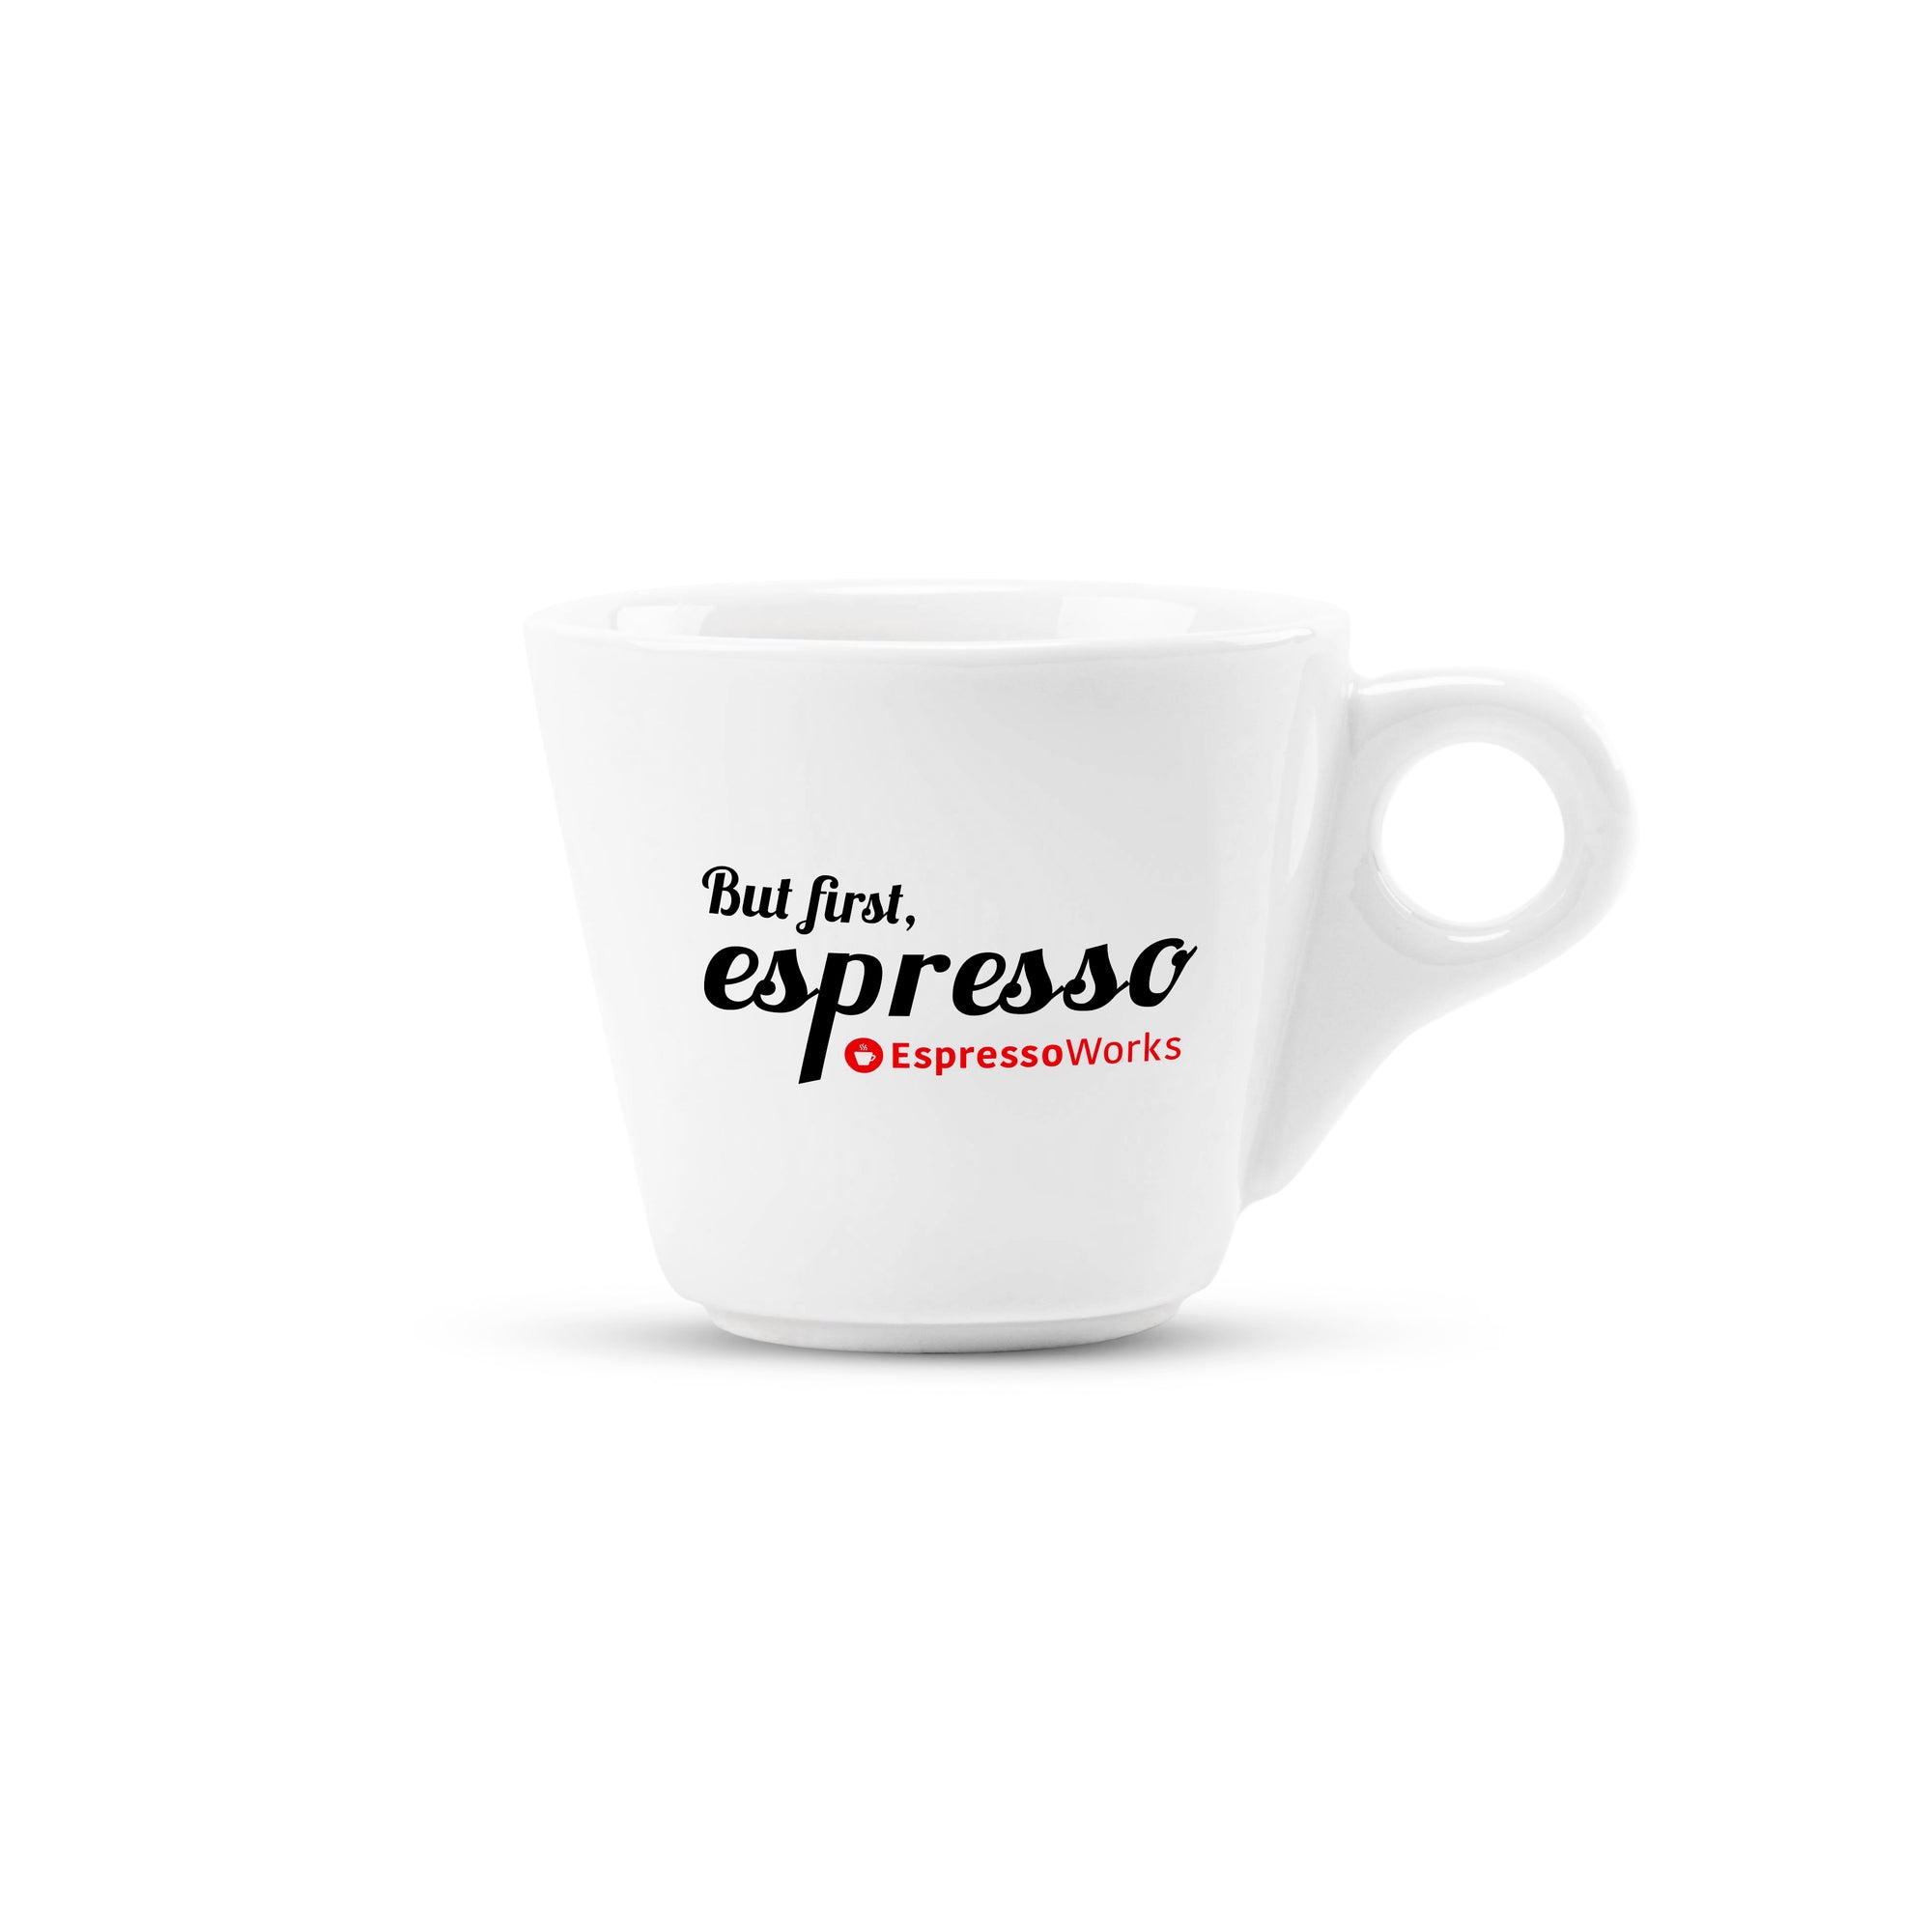  EspressoWorks Juego de 10 piezas para hacer café